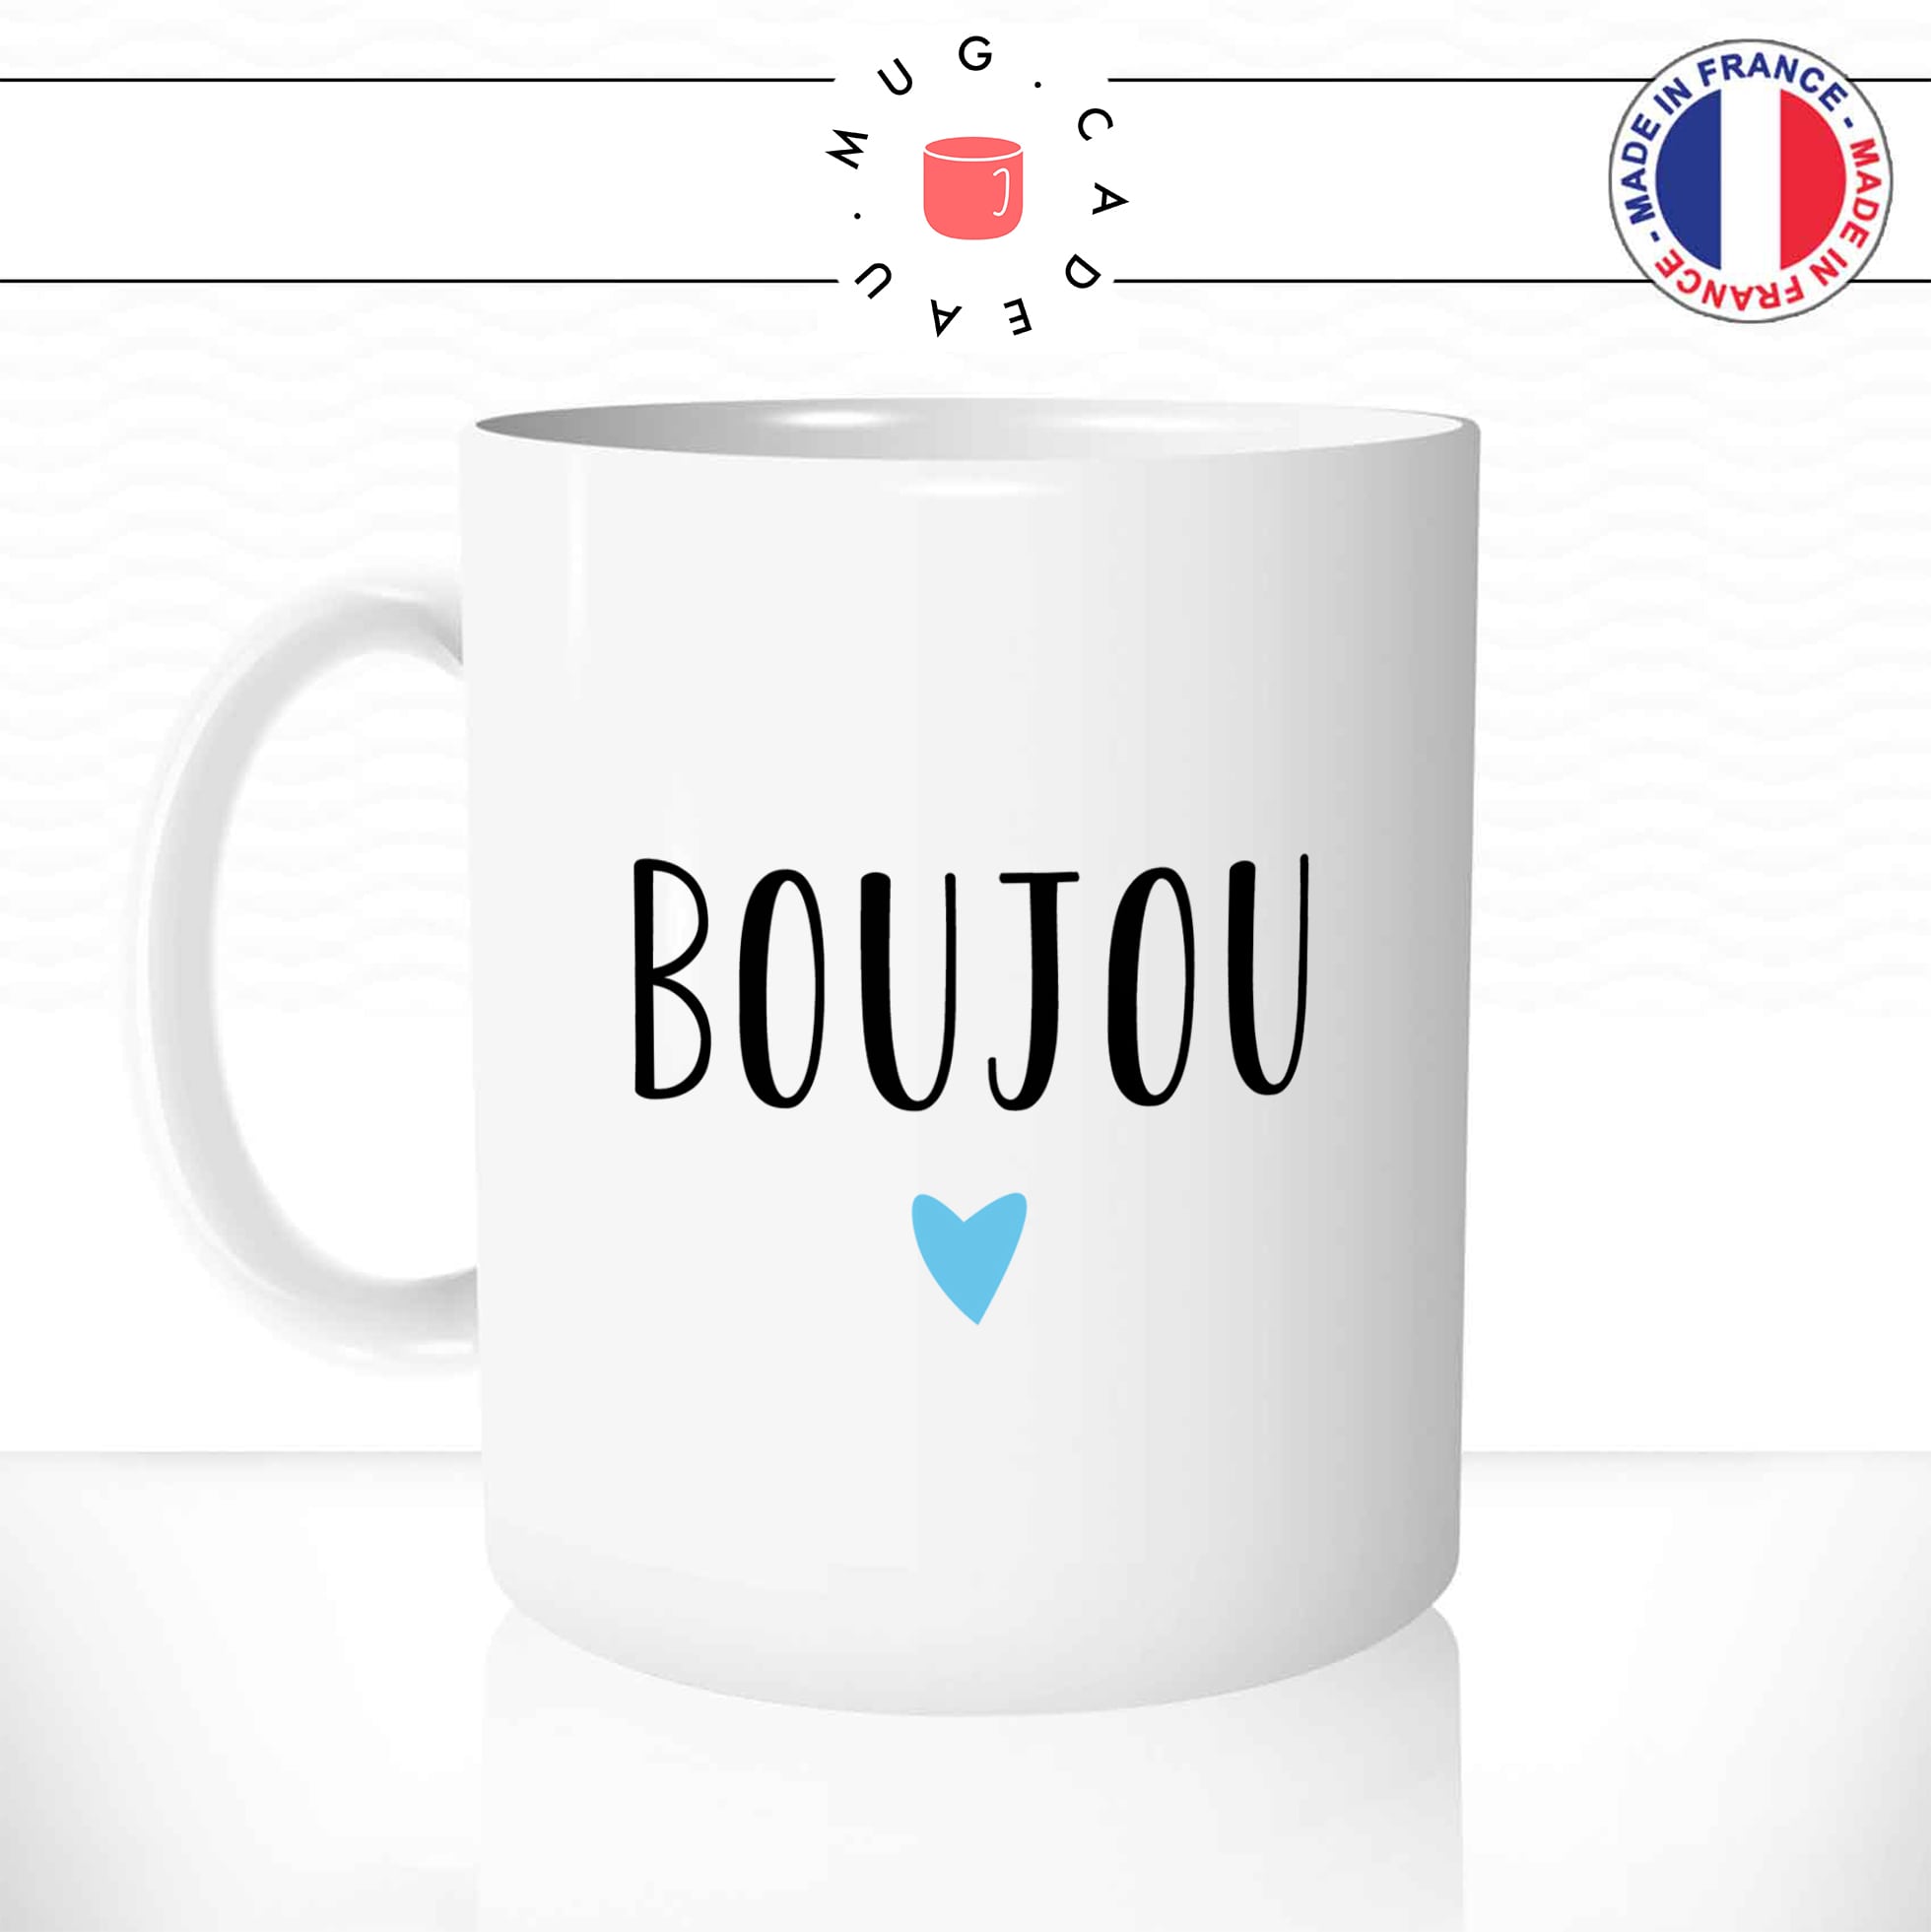 mug-tasse-booujou-normand-normandie-bisou-bonjour-patois-mignon-fun-café-thé-idée-cadeau-originale-personnalisée-min